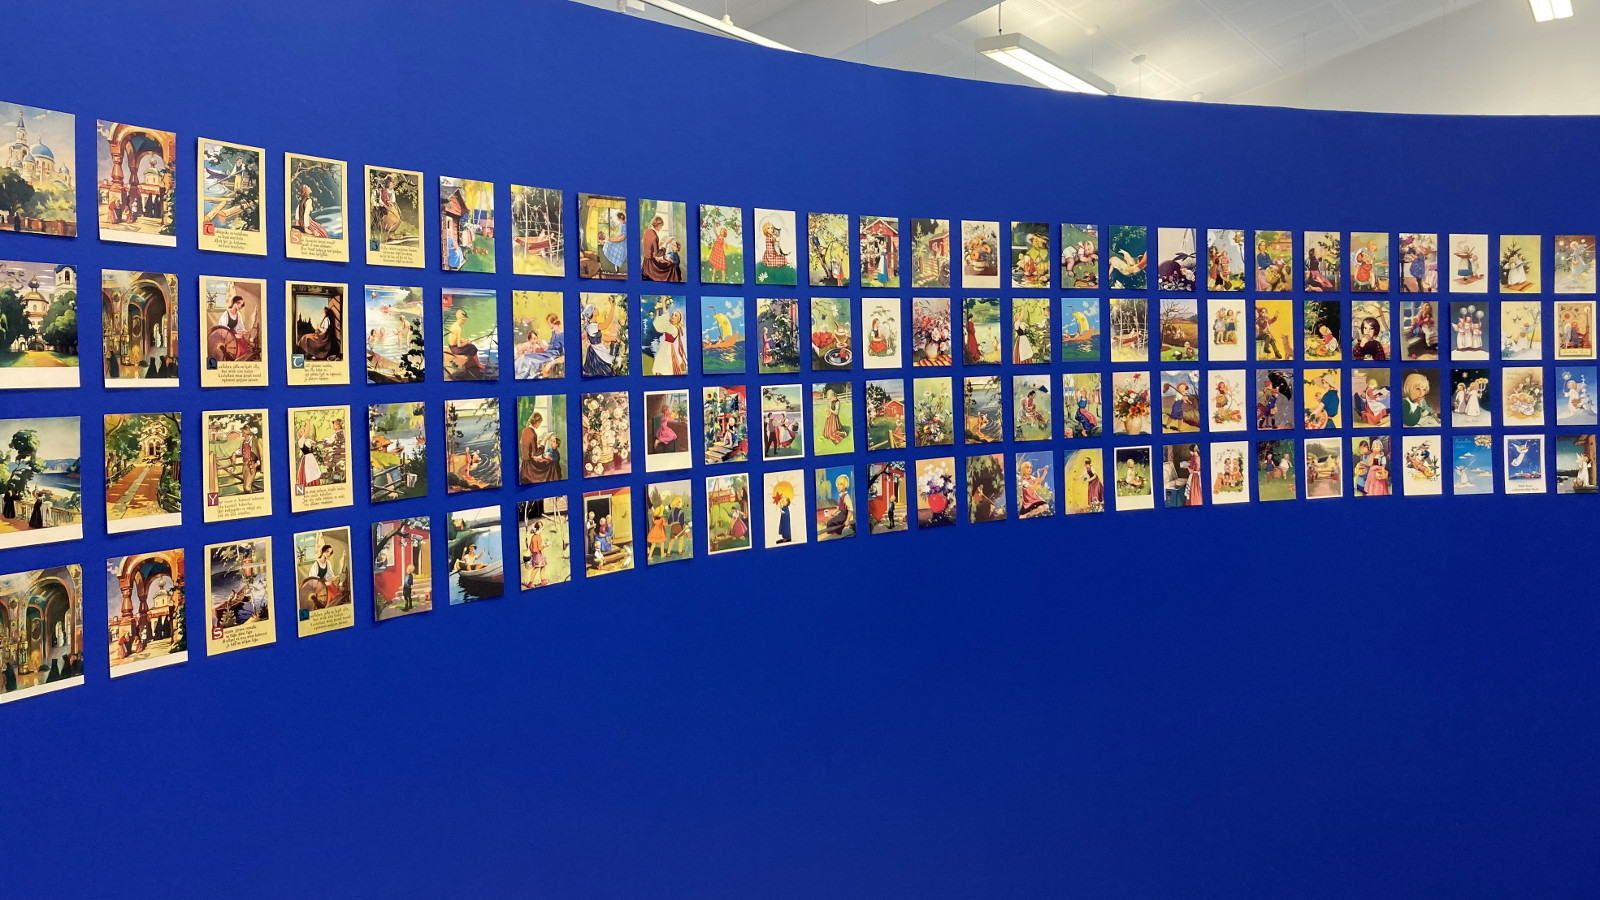 Kuvassa on sinisellä seinäll riveittäin runsaasti postikortteja.